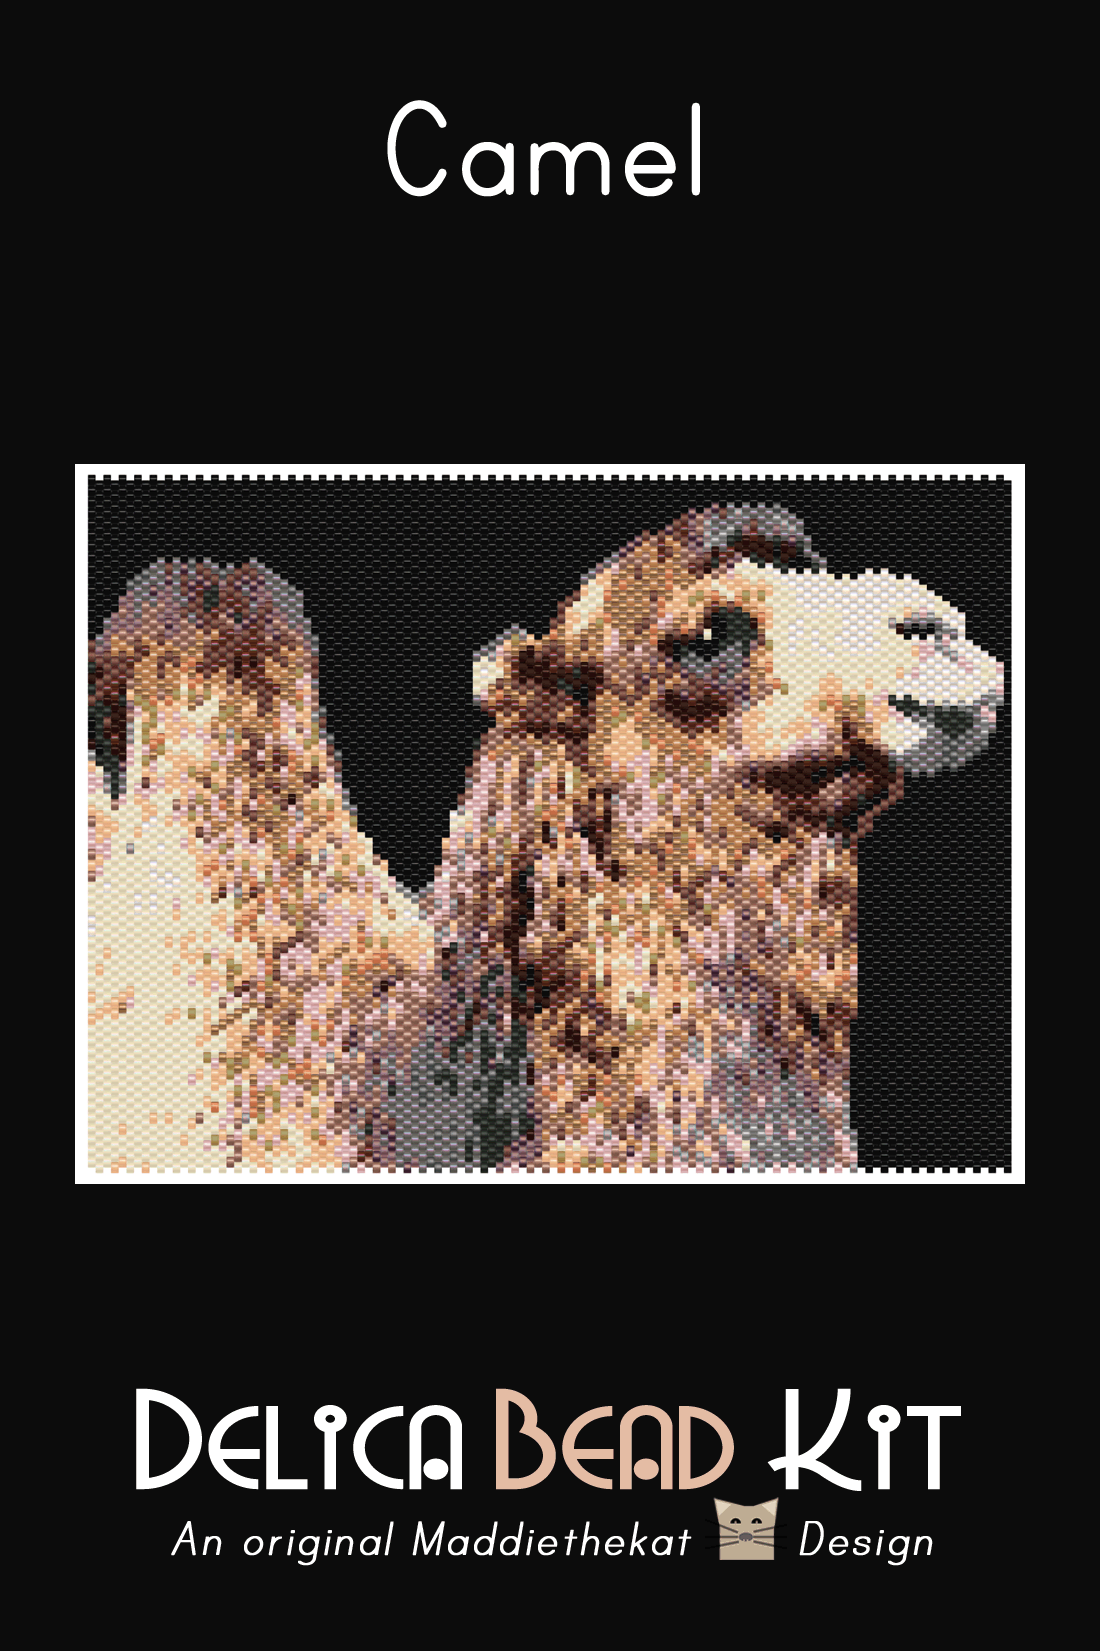 Camel Larger Peyote Bead Pattern PDF or Bead Kit